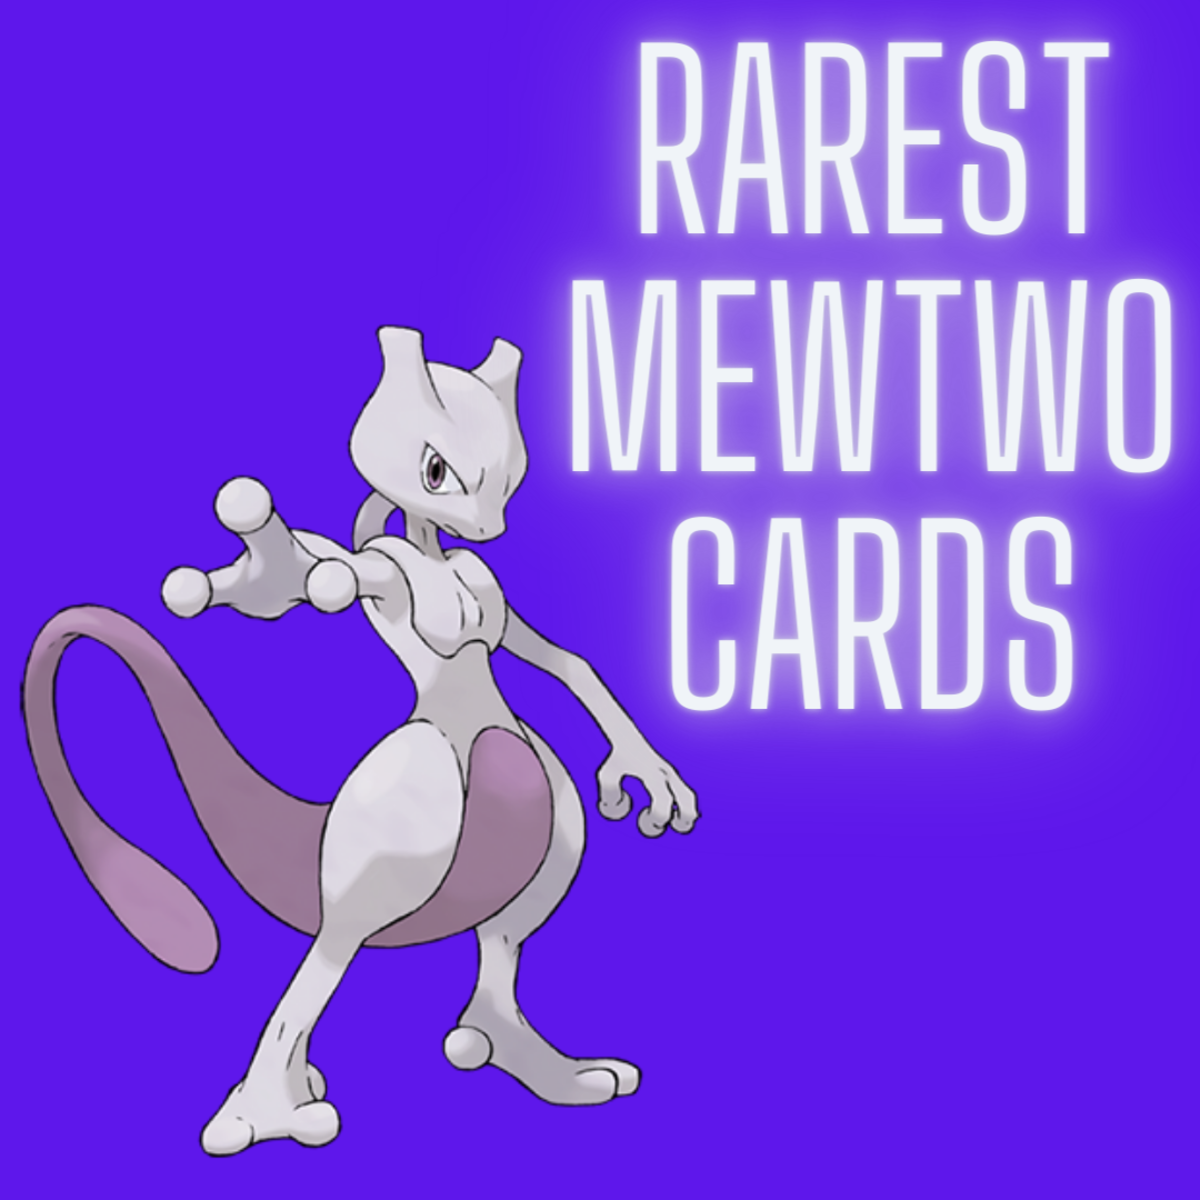 Pokemon Shiny Mewtwo EX  Mewtwo, Pokemon, Rare pokemon cards